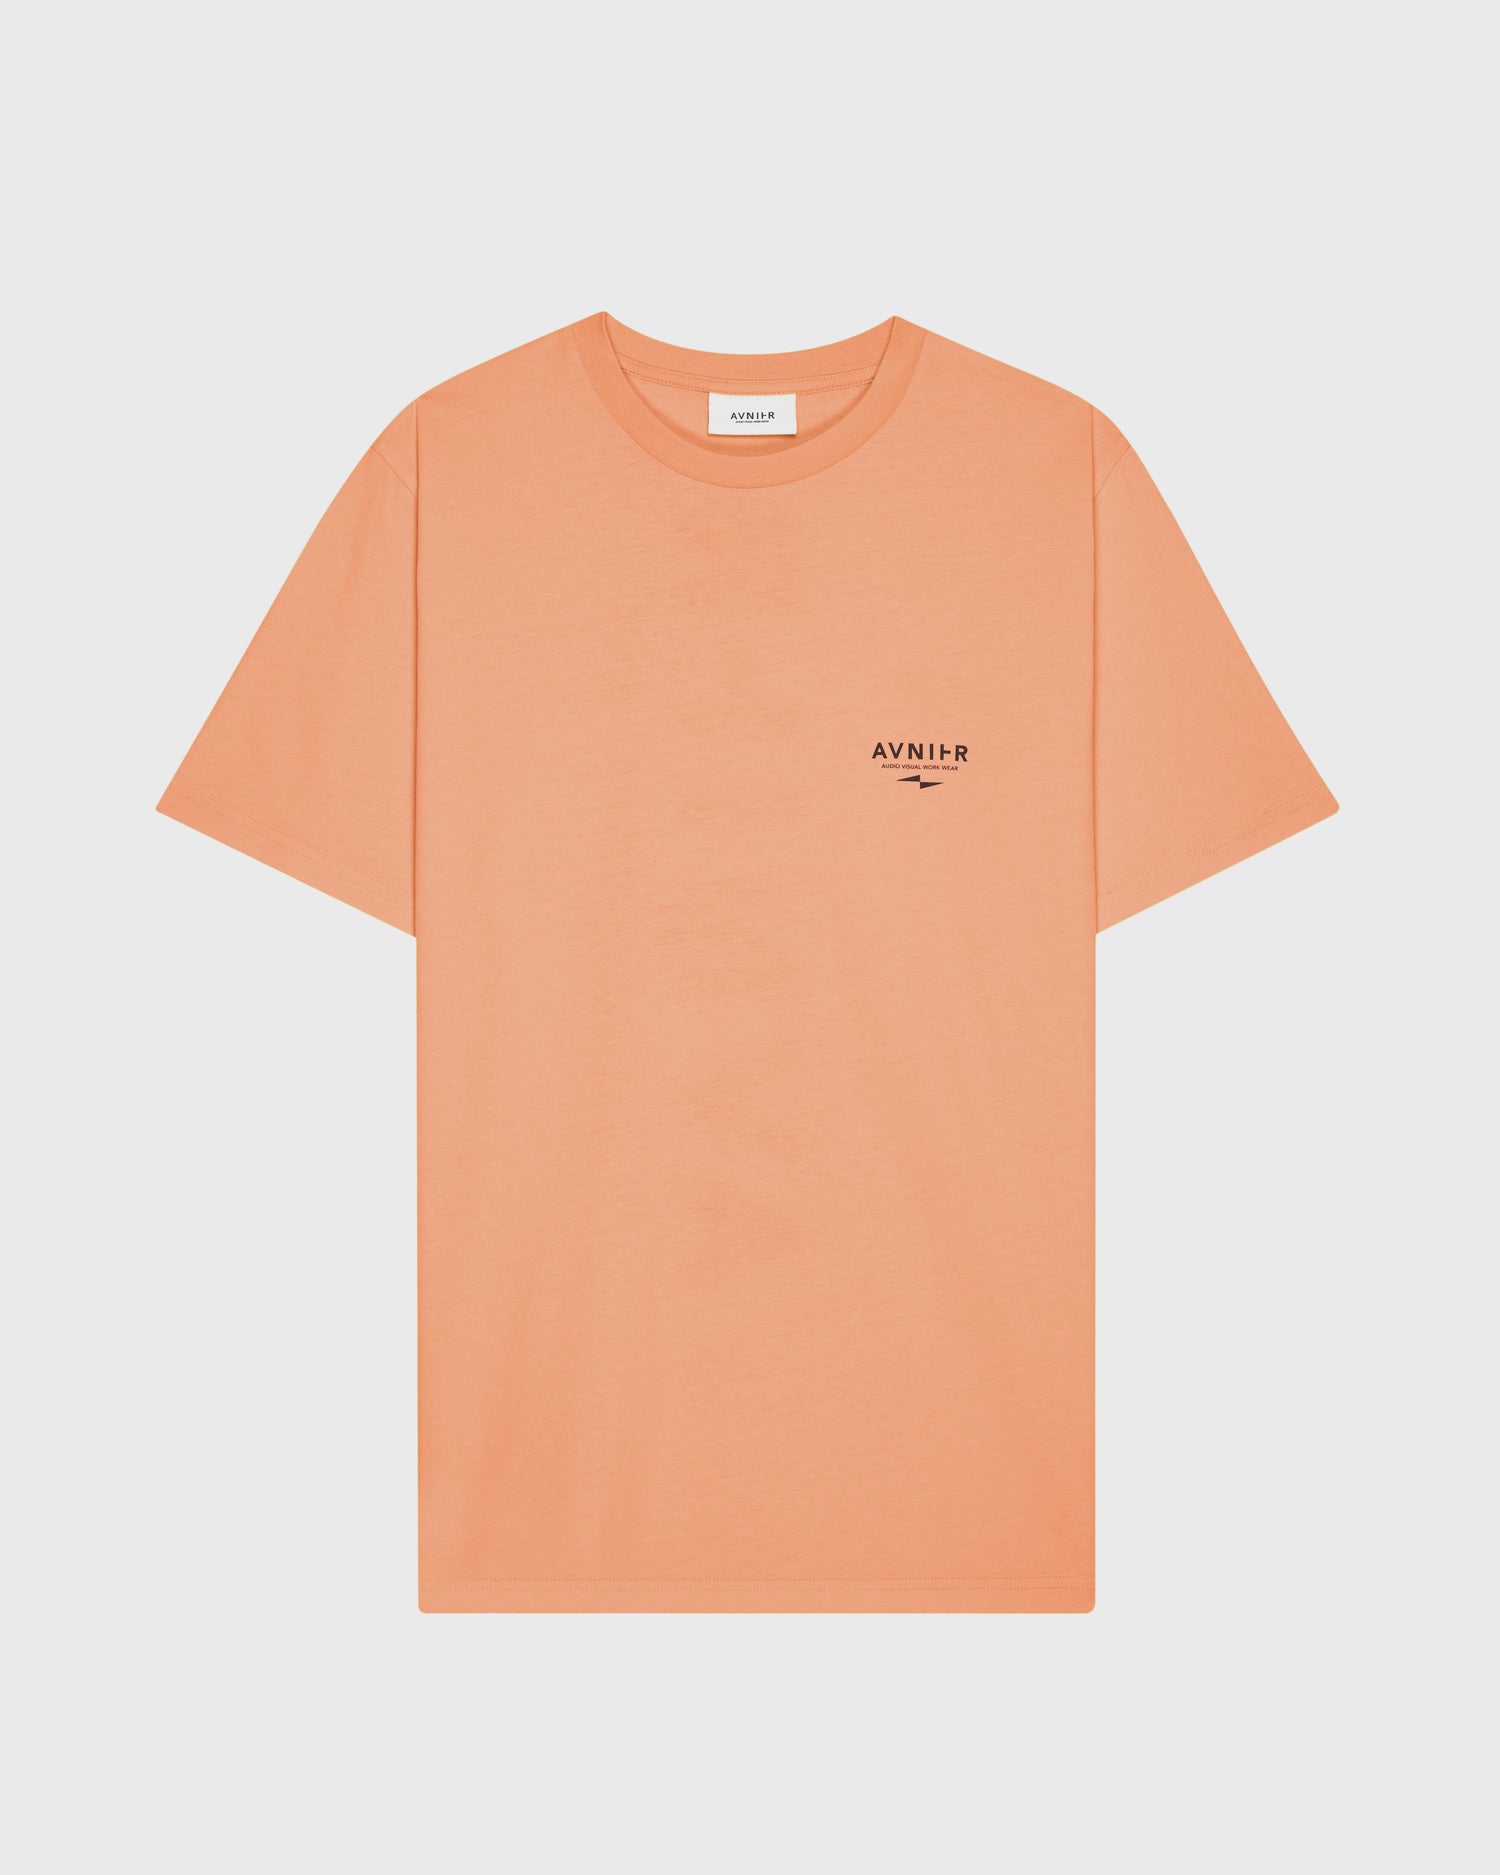 t-shirt-source-vertical-orange-avnier-avnir-1-packshot-face - Orange vibrant